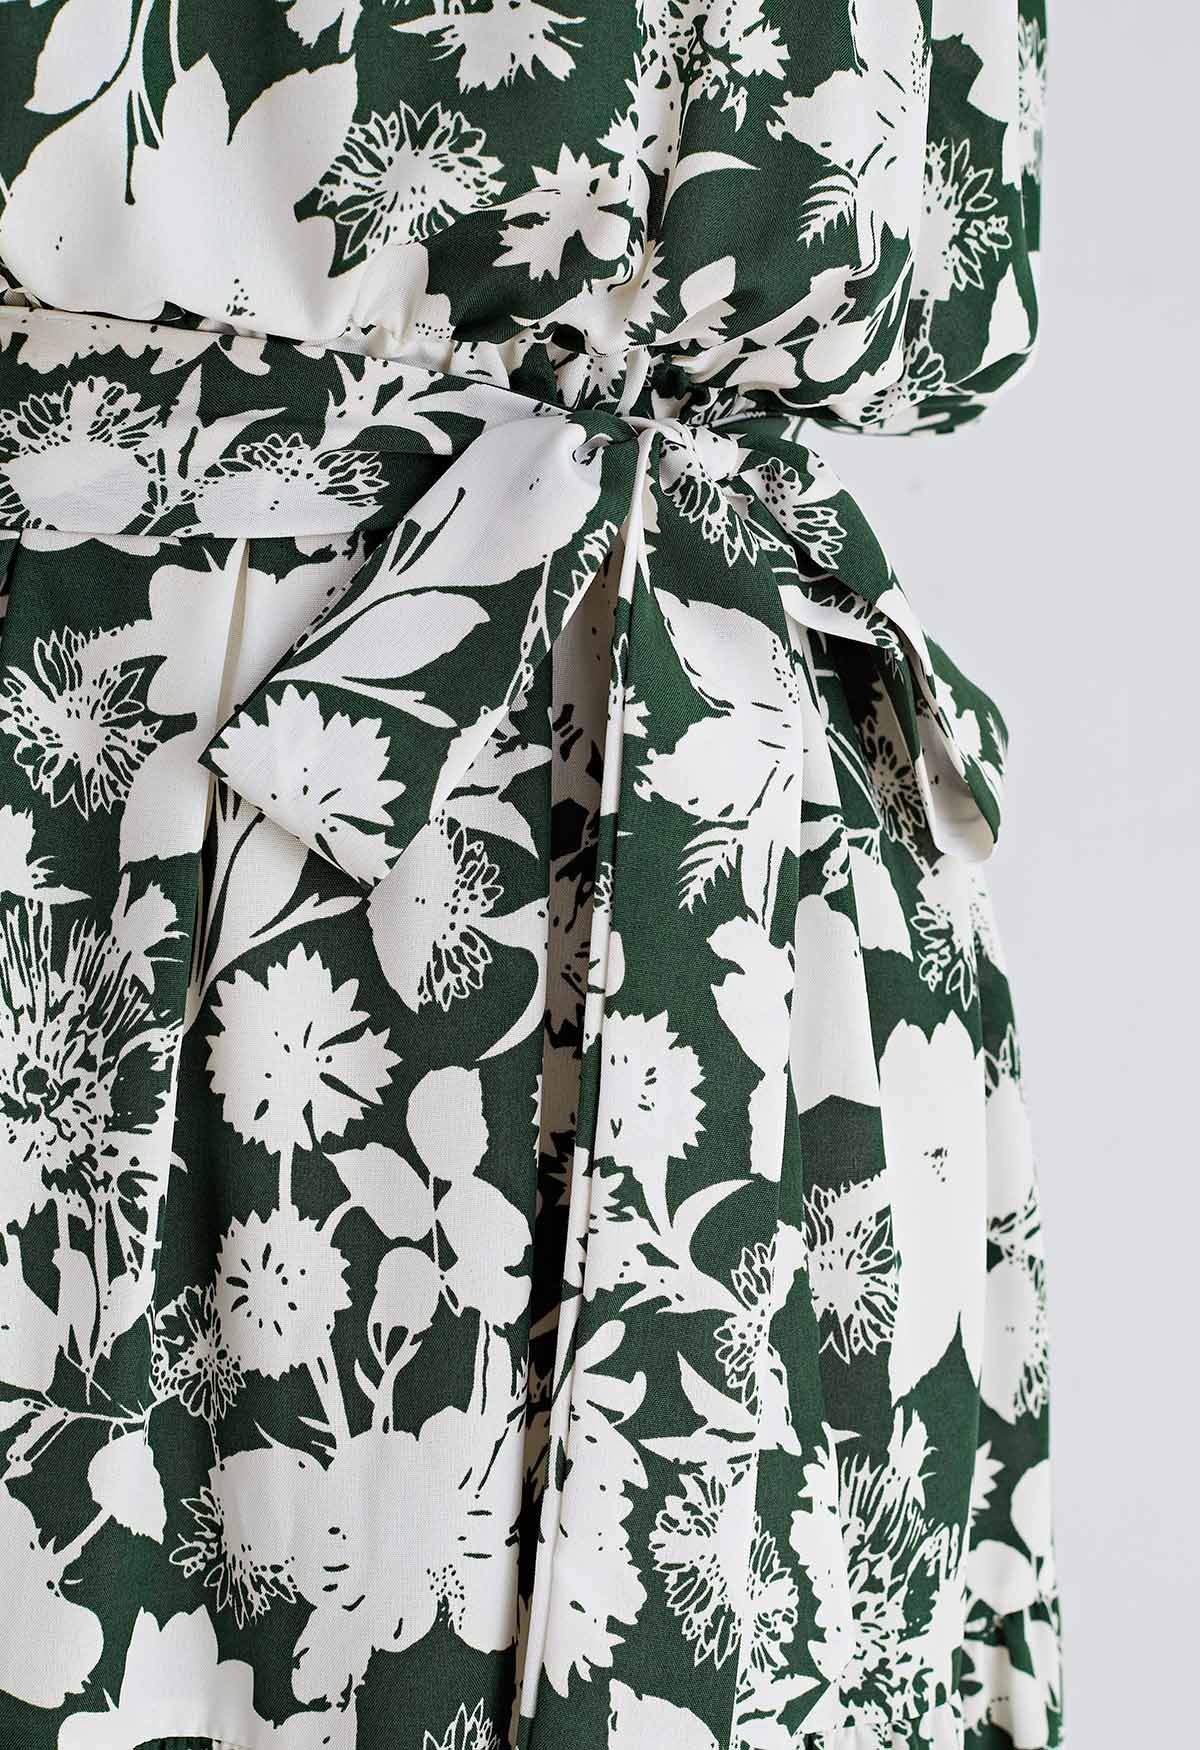 Halter Neck Tie Waist Maxi Dress in Green Floral